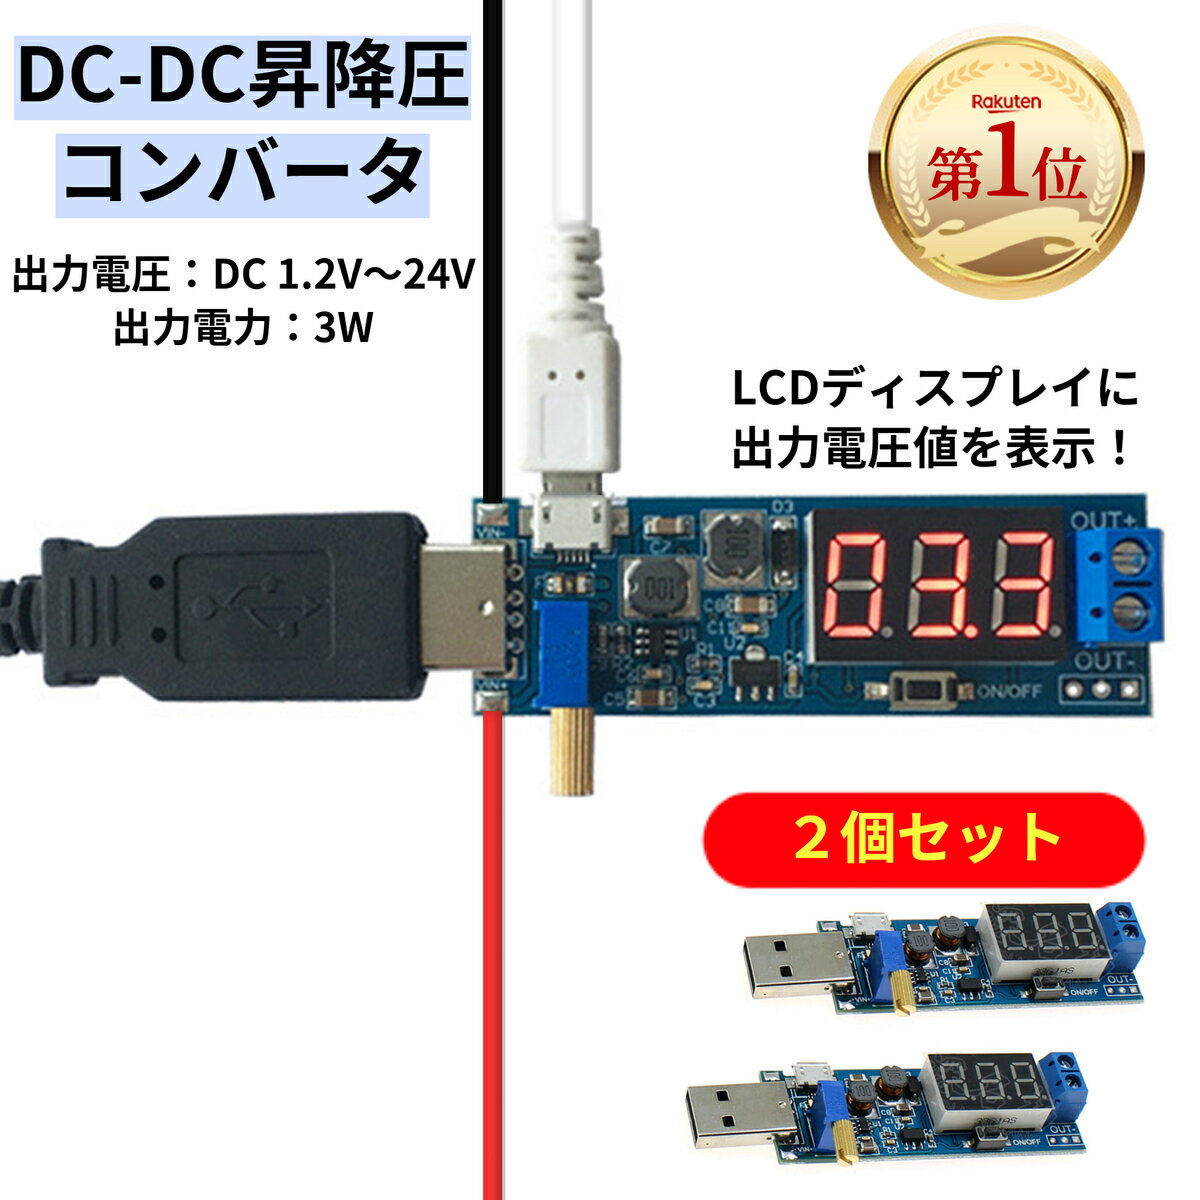 コンバータ USB 電圧レギュレータ DC-DC昇降圧コンバータ 2個セット「Rakutenランキング第1位」DC 5VからDC 1.2Vから…